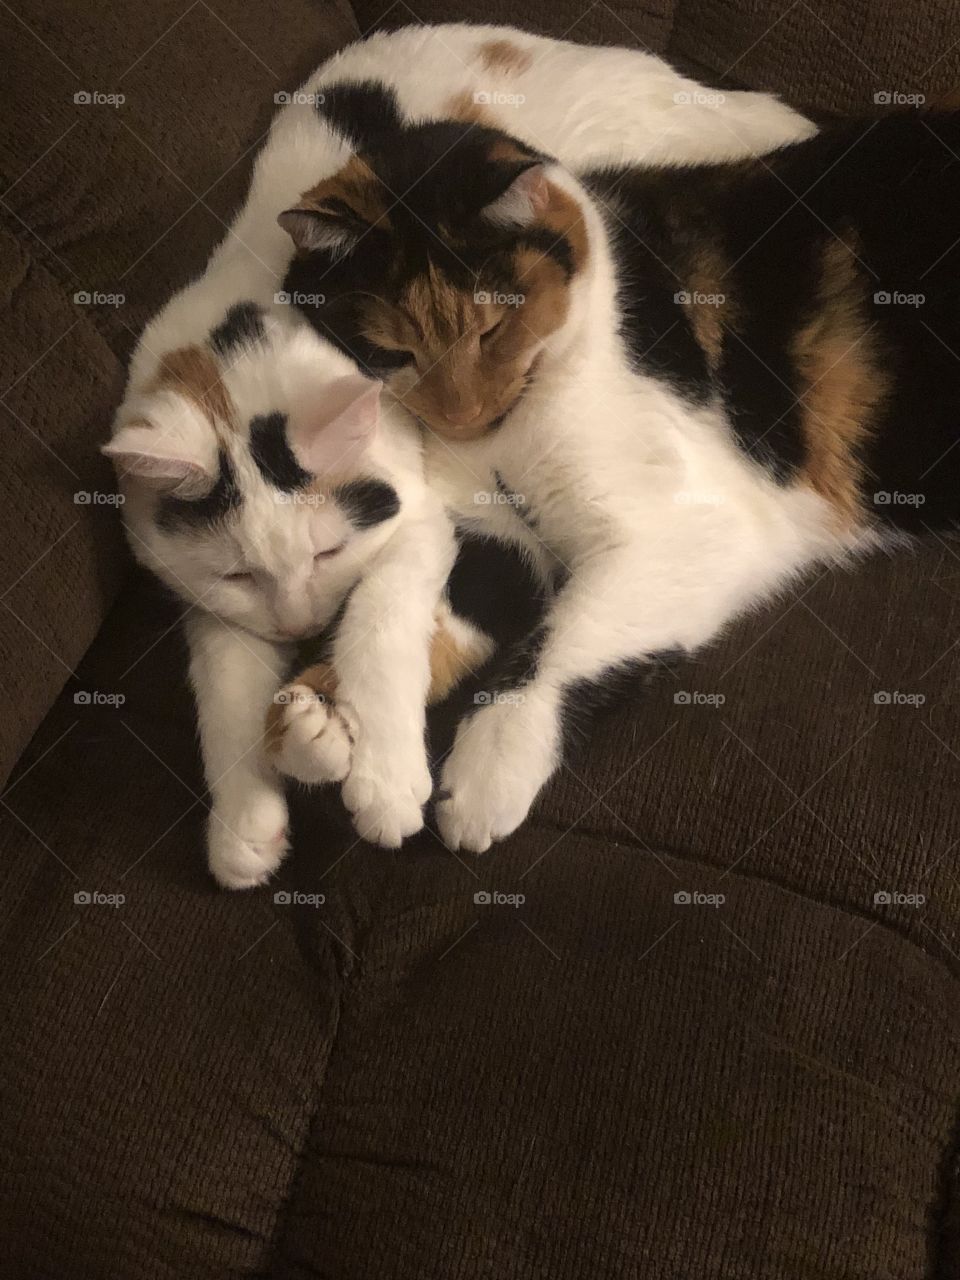 Sleeping cuddling kittens